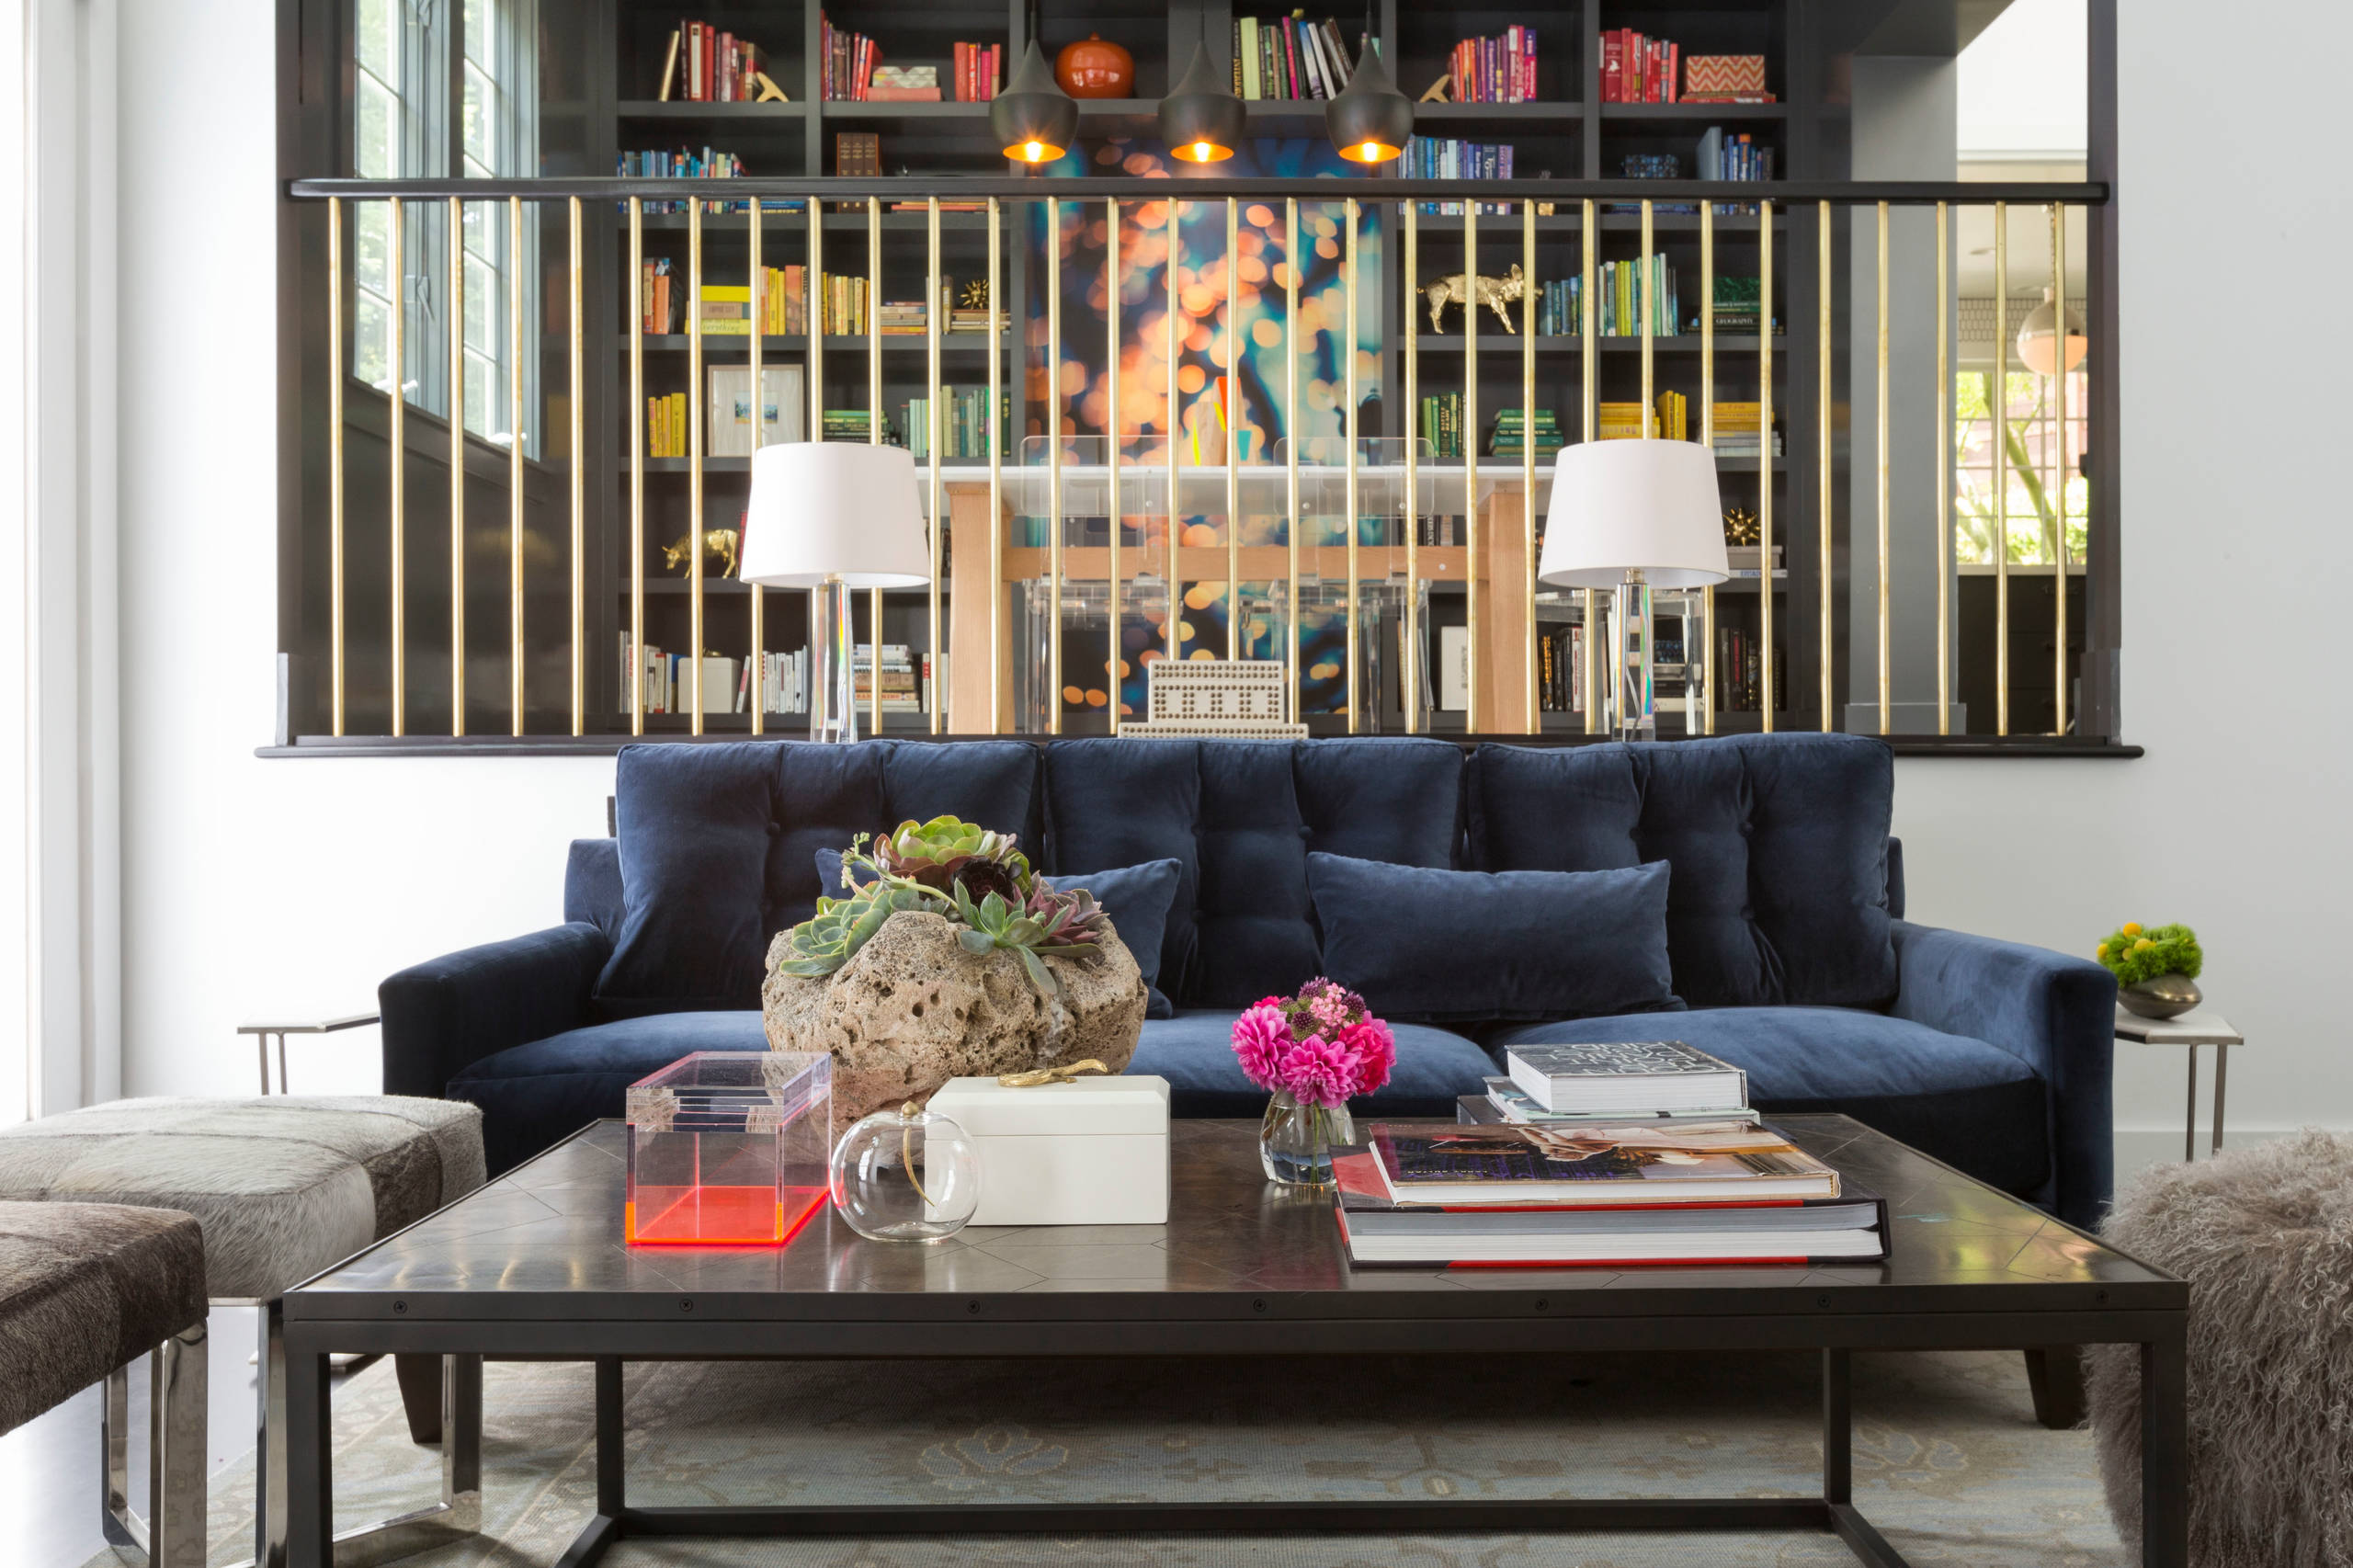 Отличным дизайнерским решением станет синий диван, который прекрасно подойдет как для спокойной гостиной, так и для классического офисного помещения